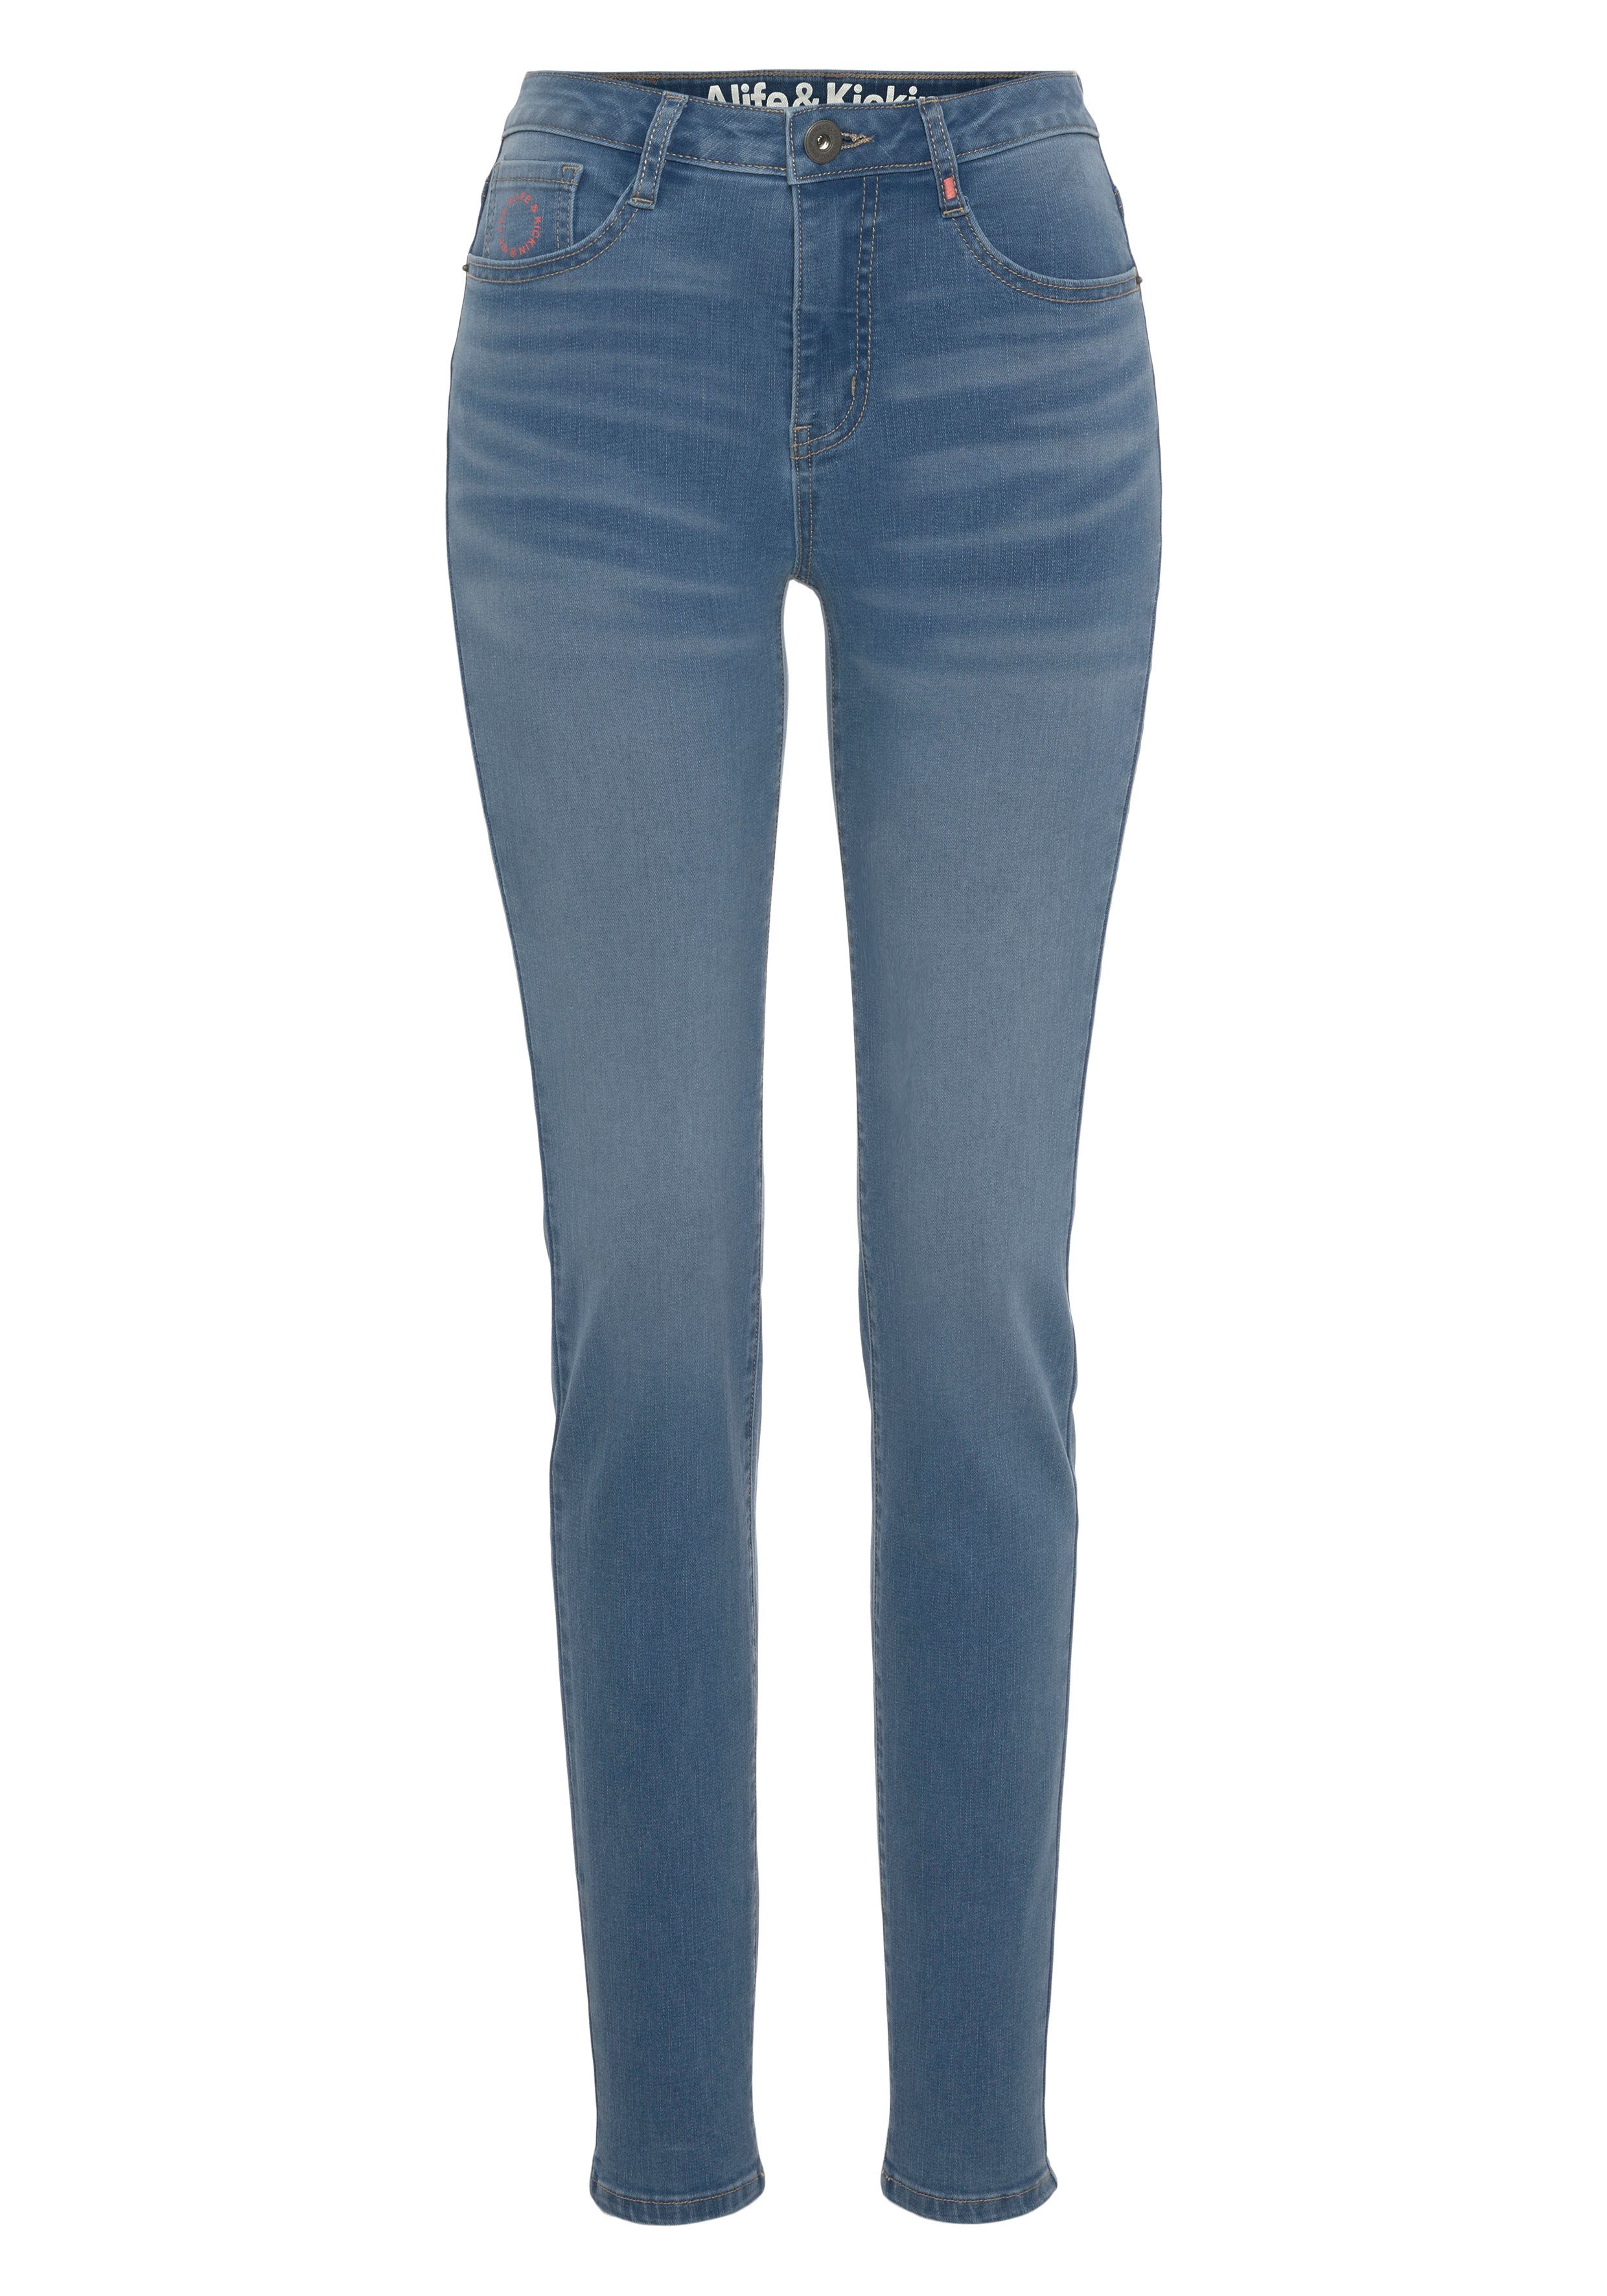 & High-waist-Jeans NolaAK Slim-Fit NEUE Alife KOLLEKTION used blue Kickin